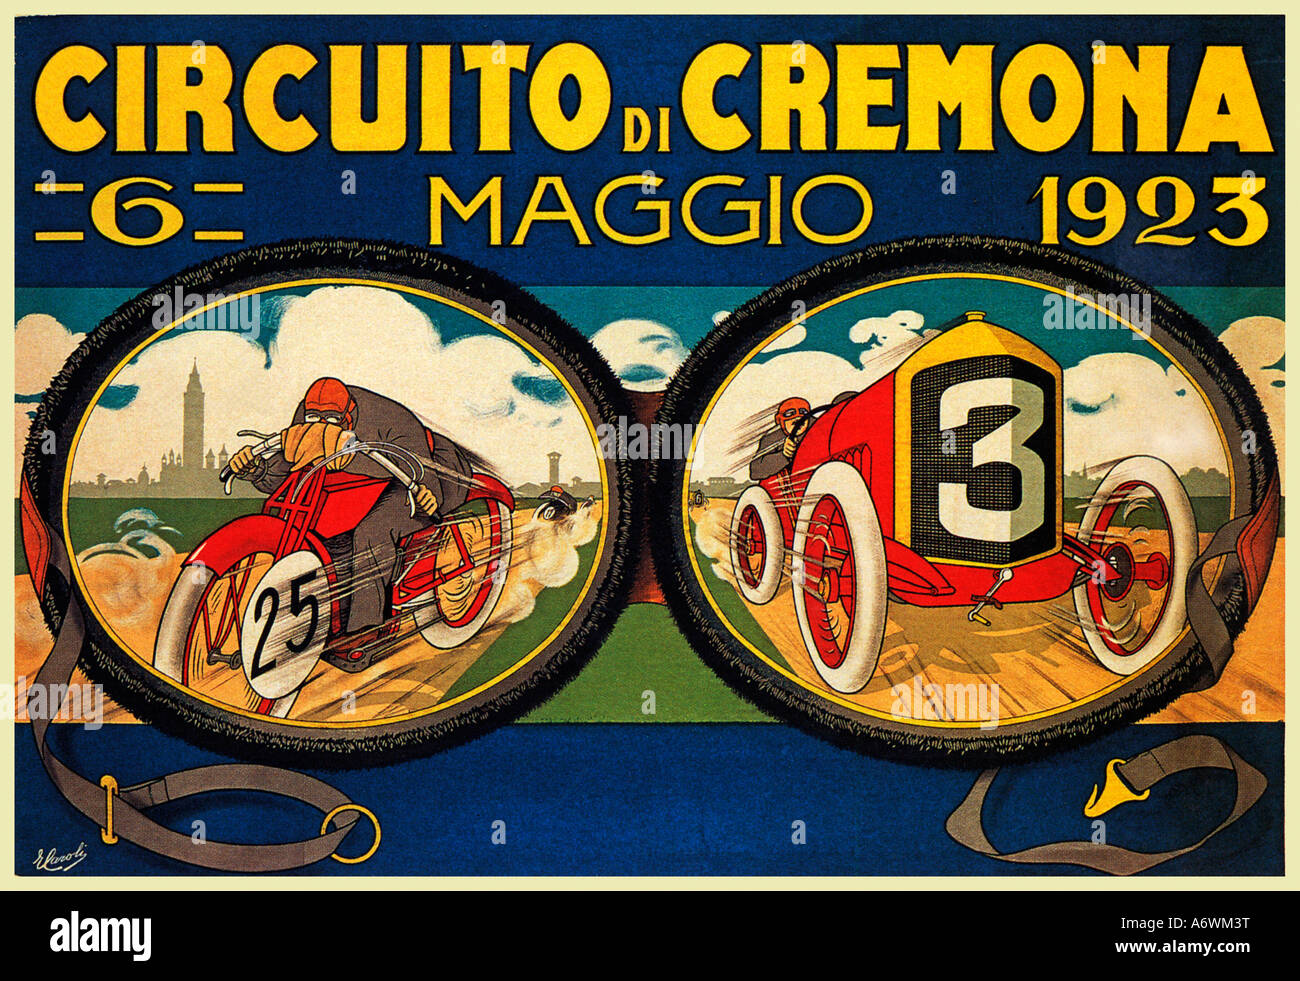 Circuito di Cremona 1923 Poster da Caroli per la pubblicità delle corse del motore intorno alla città italiana Foto Stock